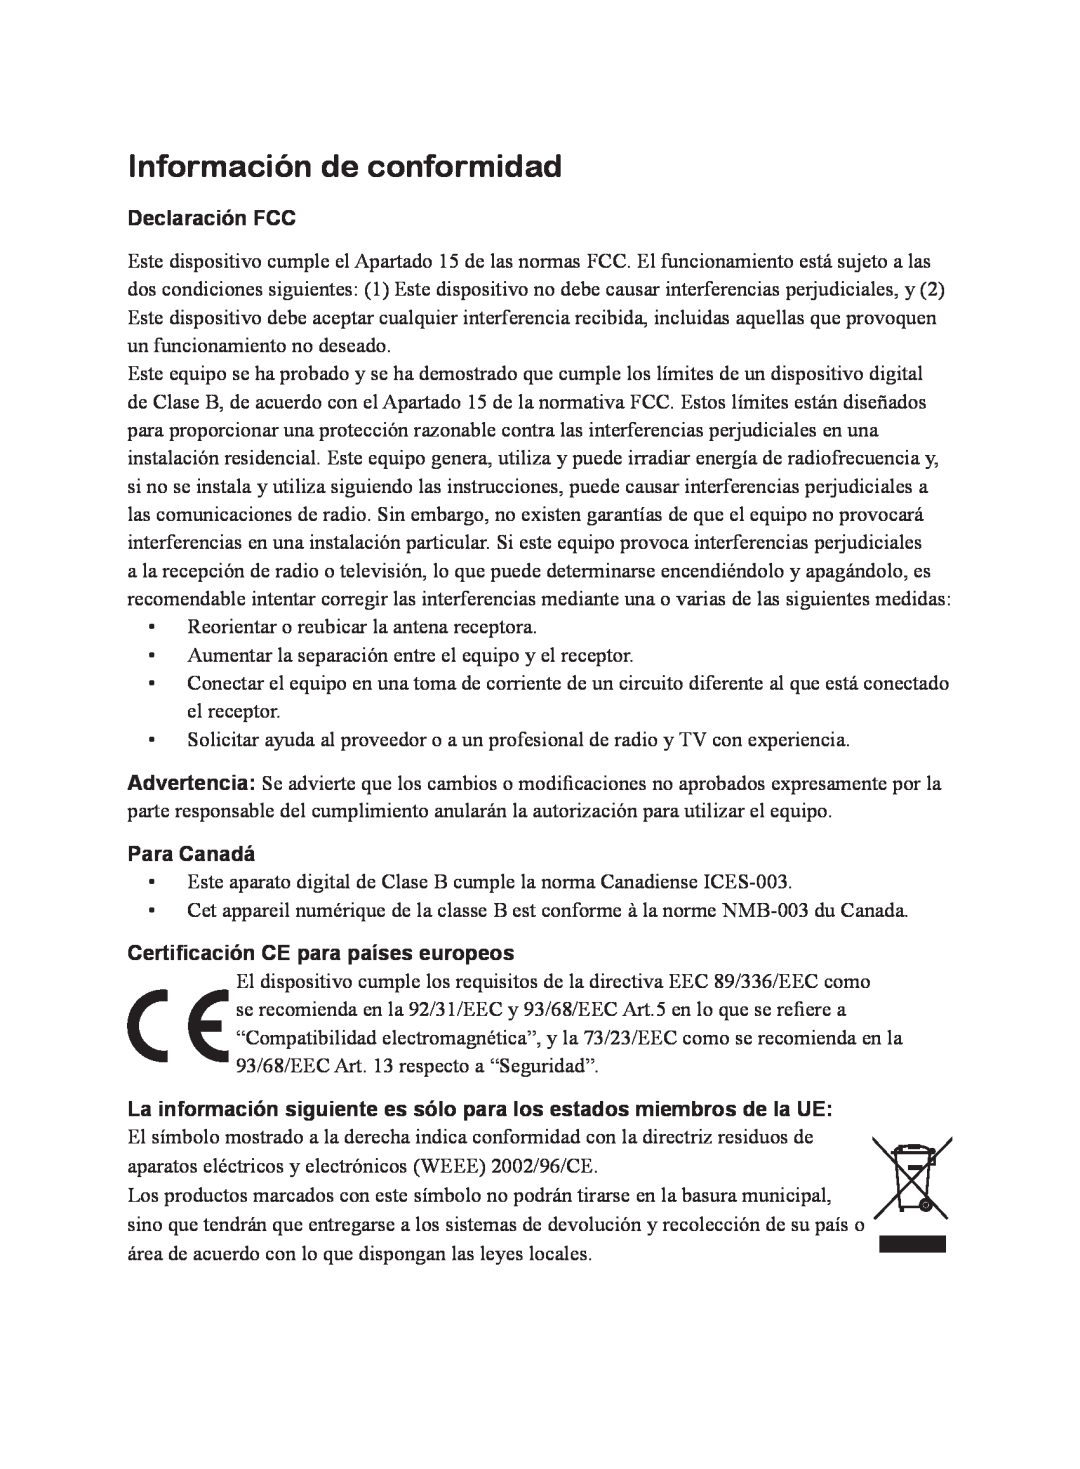 ViewSonic VS10872 manual Información de conformidad, Declaración FCC, Para Canadá, Certificación CE para países europeos 